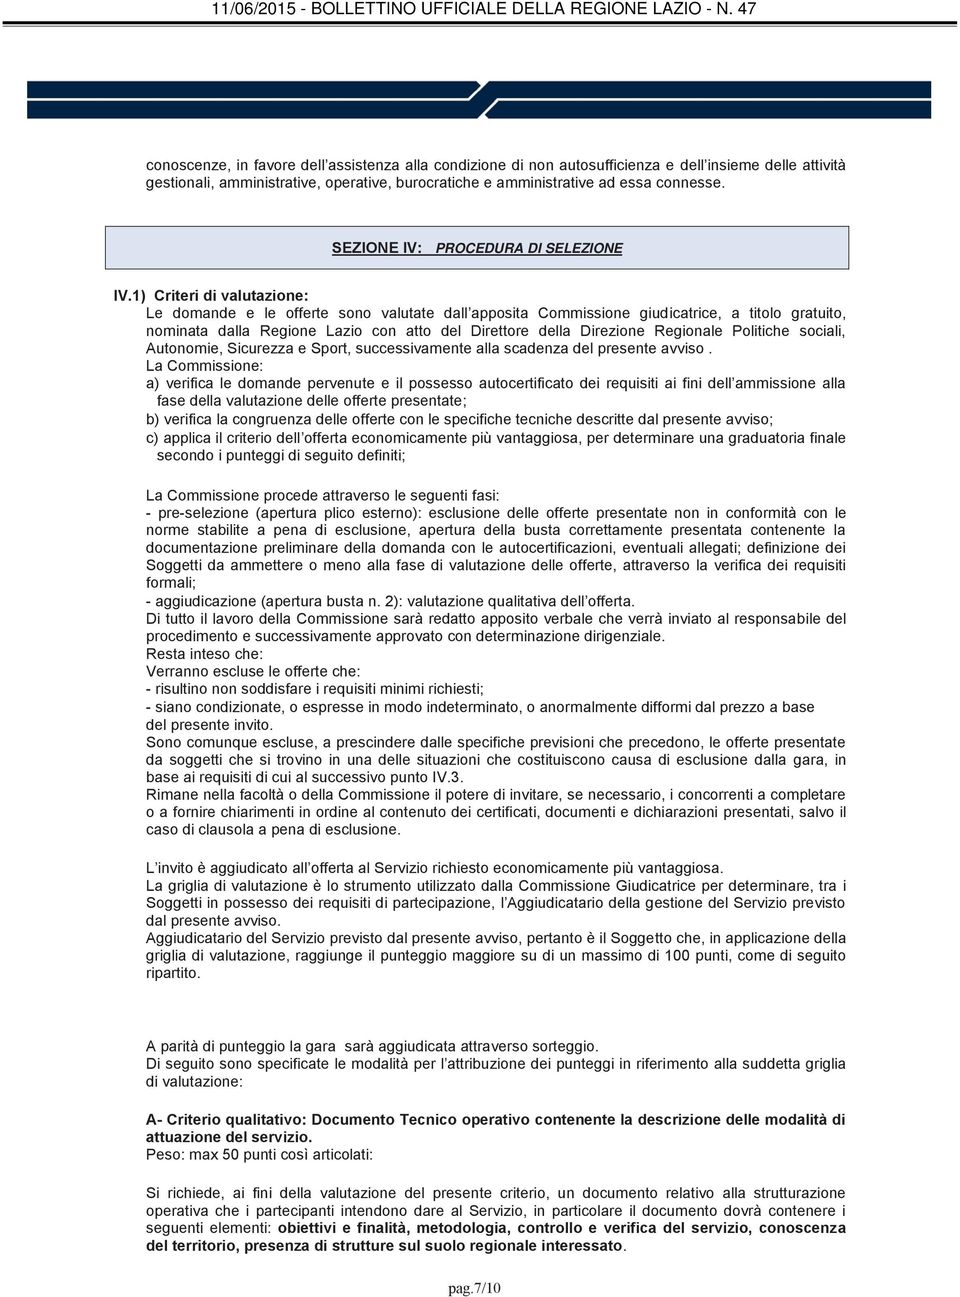 1) Criteri di valutazione: Le domande e le offerte sono valutate dall apposita Commissione giudicatrice, a titolo gratuito, nominata dalla Regione Lazio con atto del Direttore della Direzione